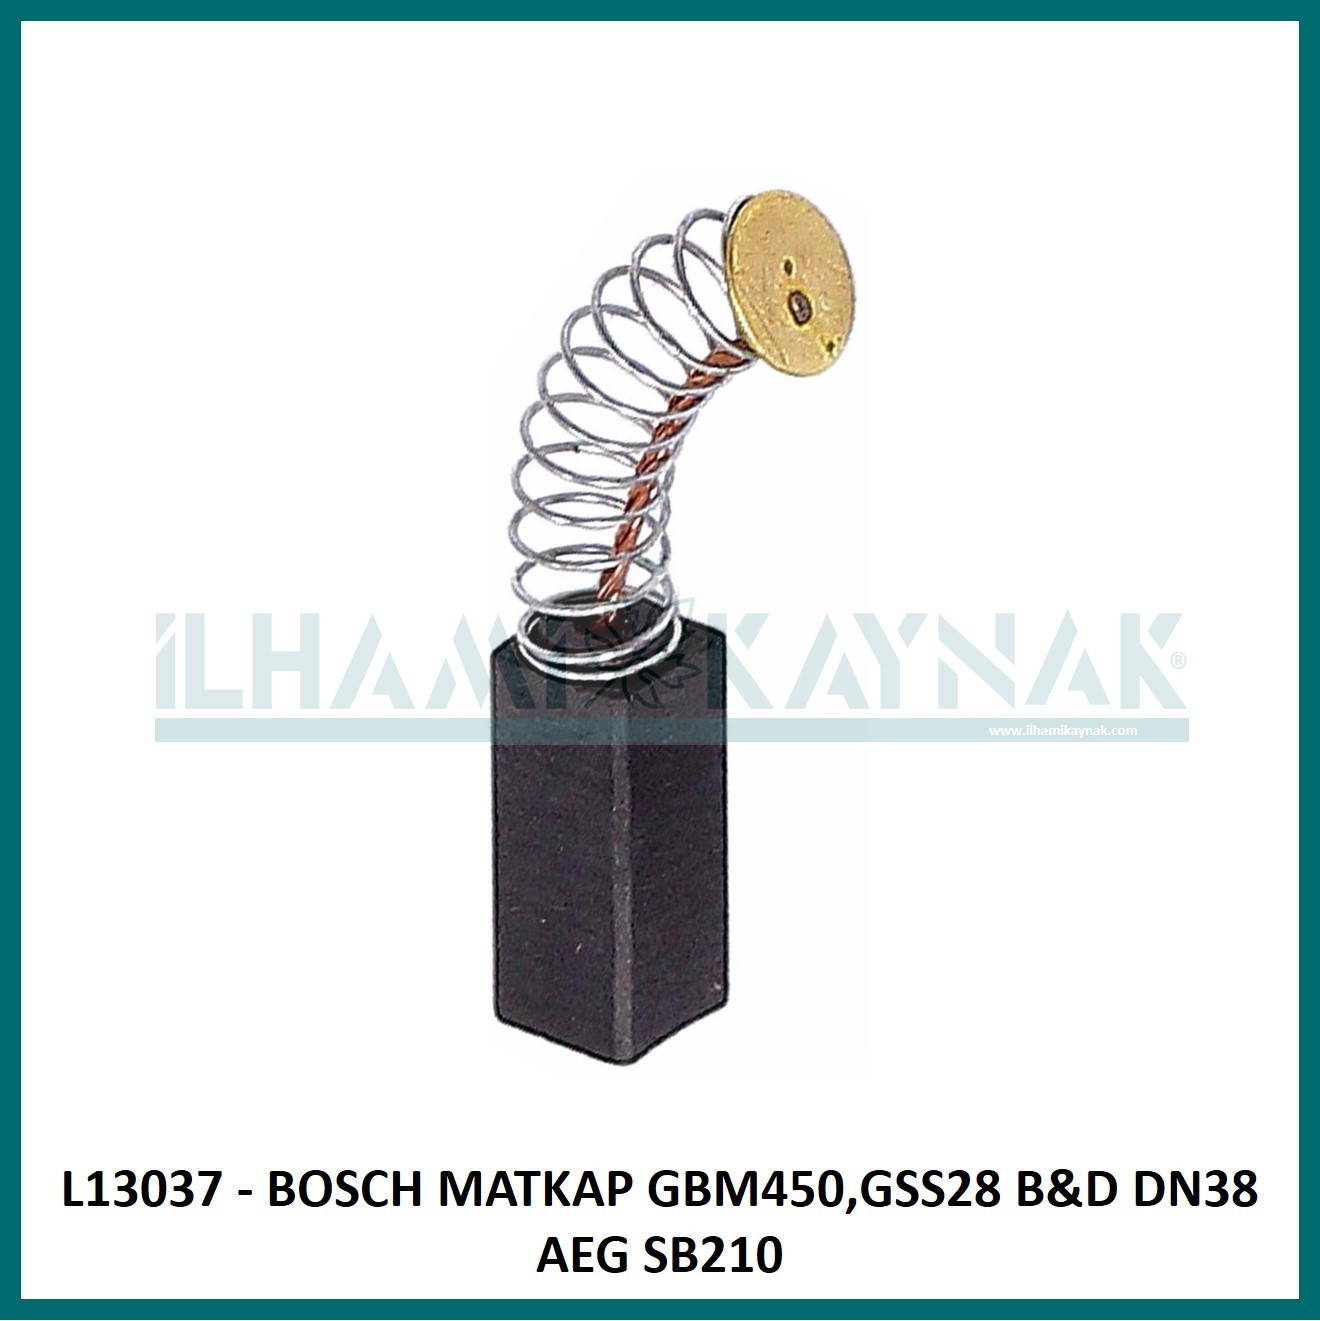 L13037 - BOSCH MATKAP GBM450,GSS28 B&D DN38 AEG SB210 - 6.3*6.3*16 mm - 100 Adet